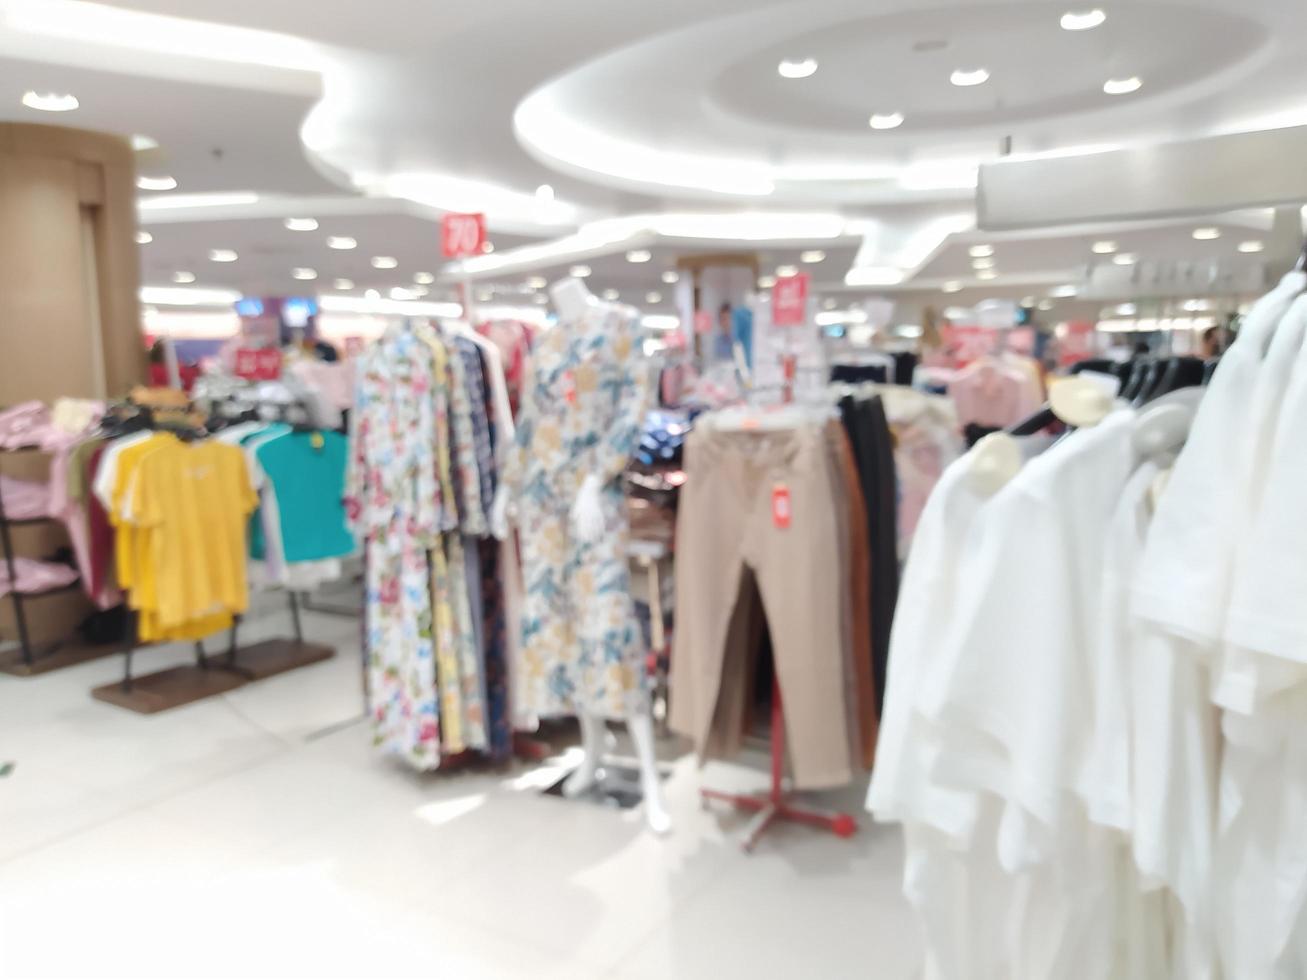 flou abstrait avec bokeh dans un centre commercial, supermarché flou photo